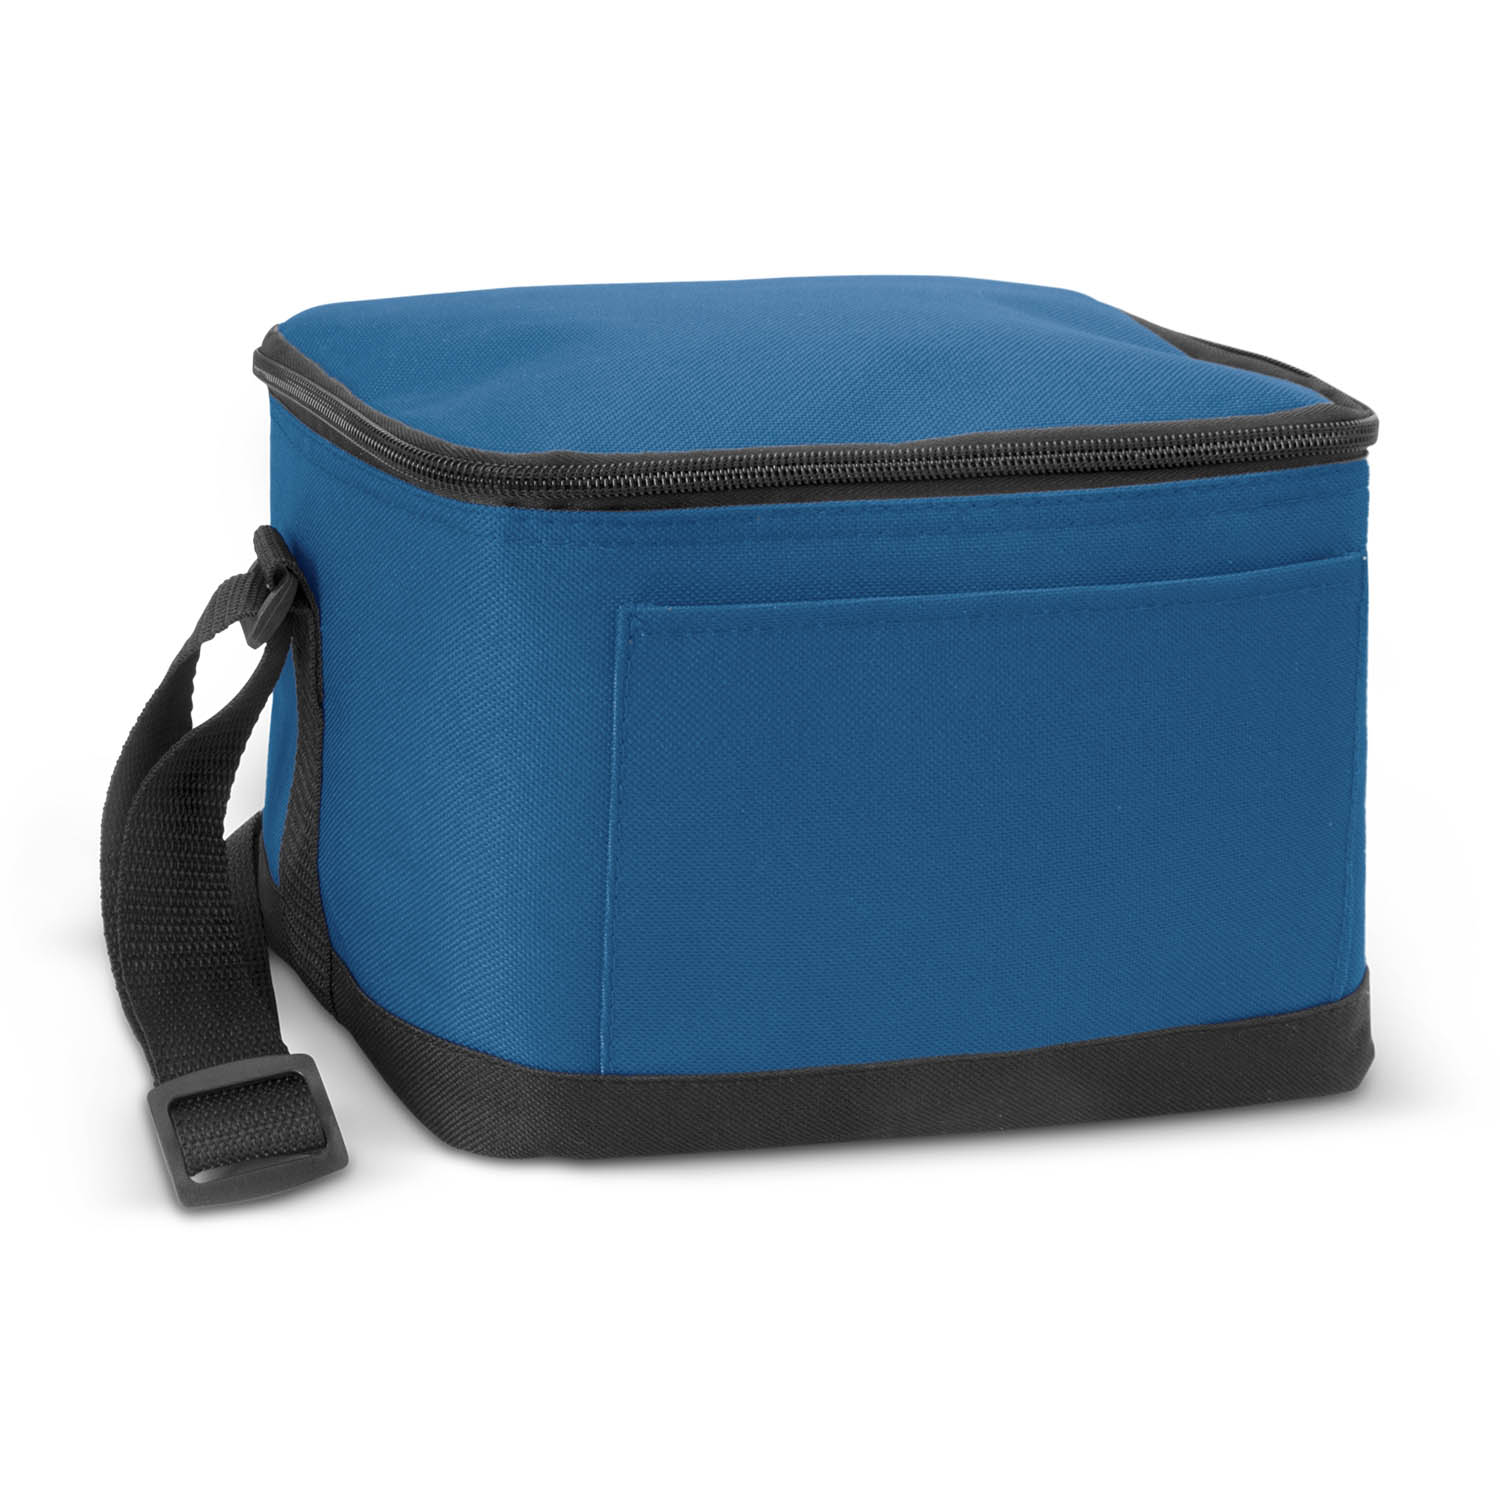 Buy Online Dark Blue Bathurst Cooler Bags in Australia